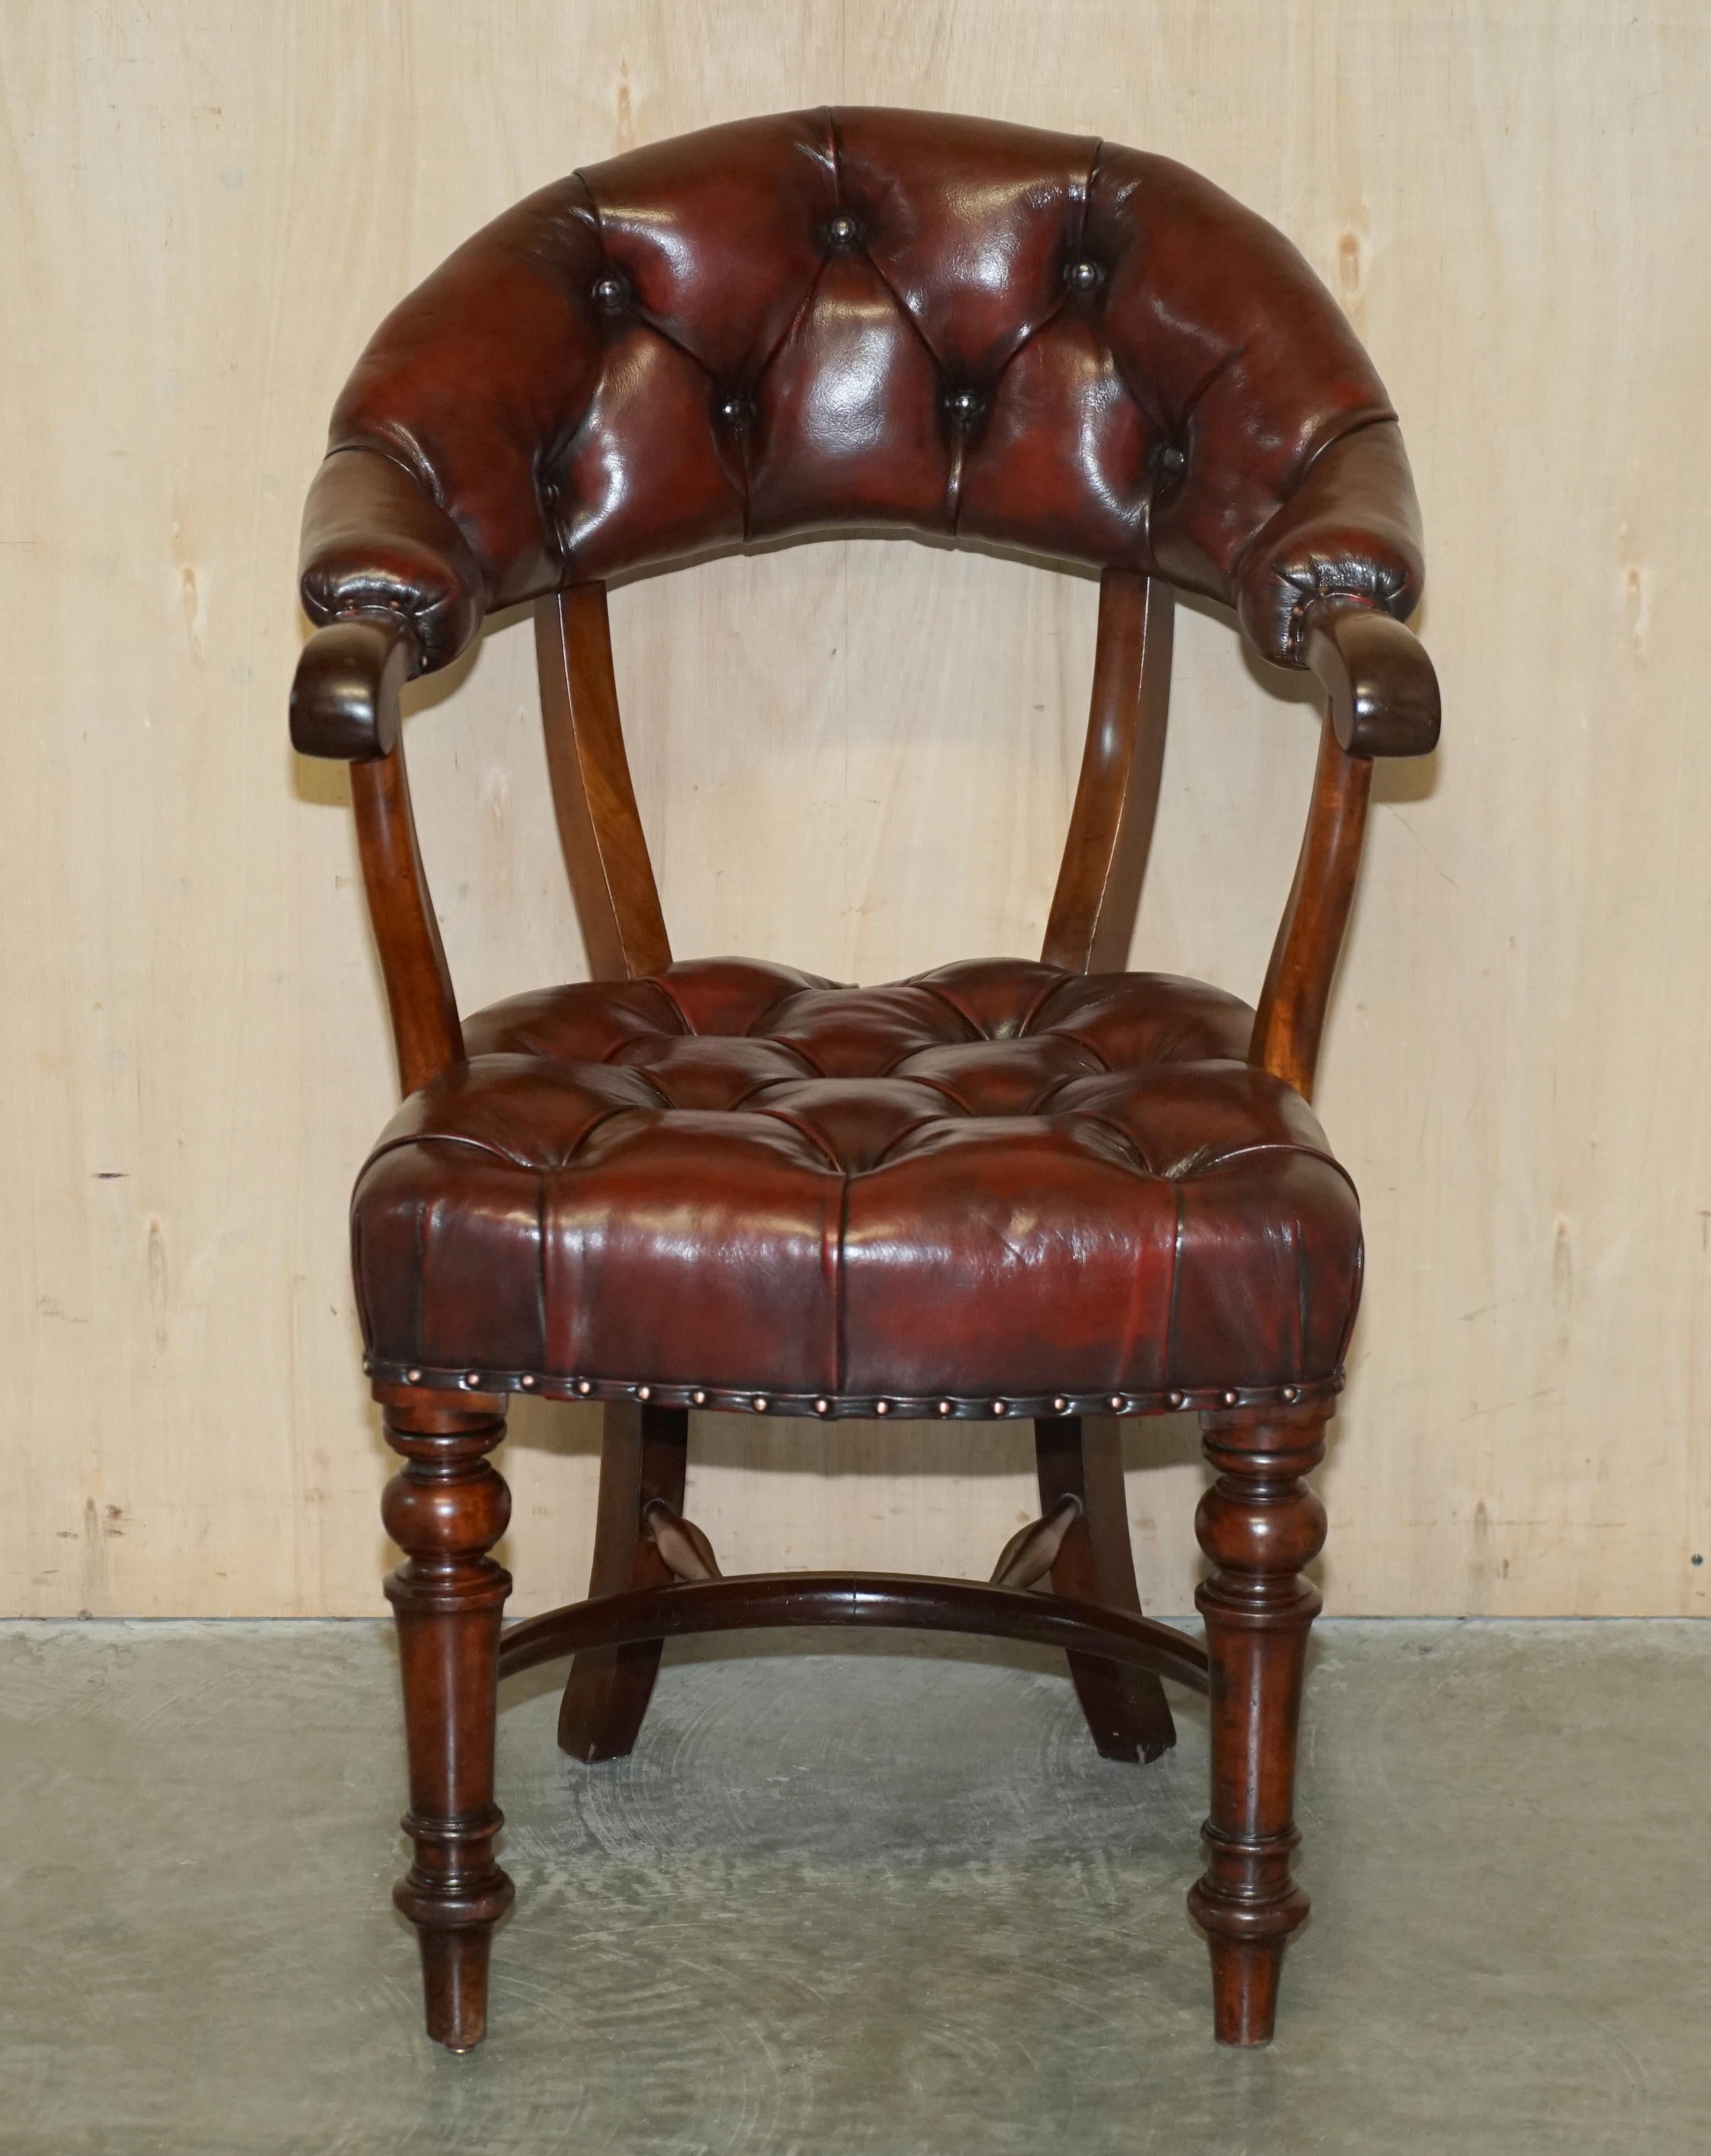 Royal House Antiques

Royal House Antiques freut sich, diesen schönen, antiken, vollständig restaurierten, originalen Mahagoni-Stuhl mit handgefärbtem Chesterfield-Leder um 1830 zum Verkauf anzubieten.

Bitte beachten Sie die Lieferkosten aufgeführt